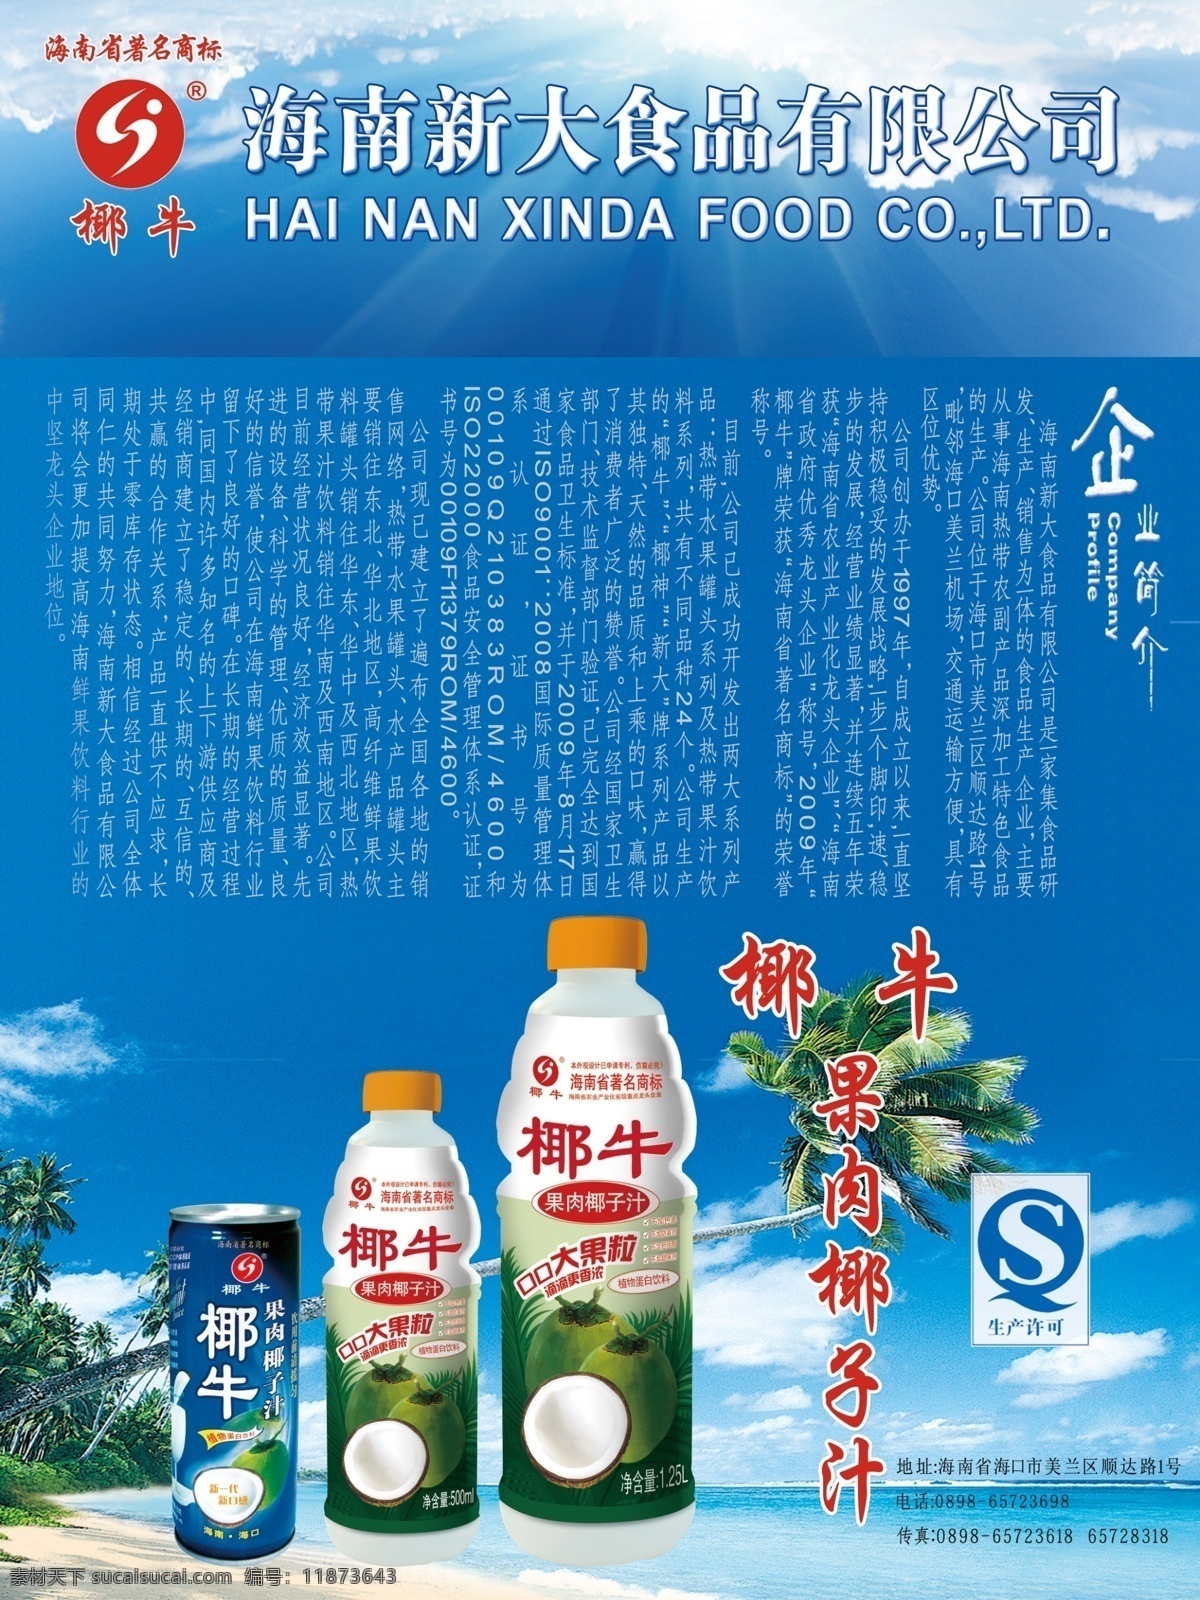 新大食品展板 椰牛 新大食品 果肉椰子汁 企业简介 展板模板 广告设计模板 源文件